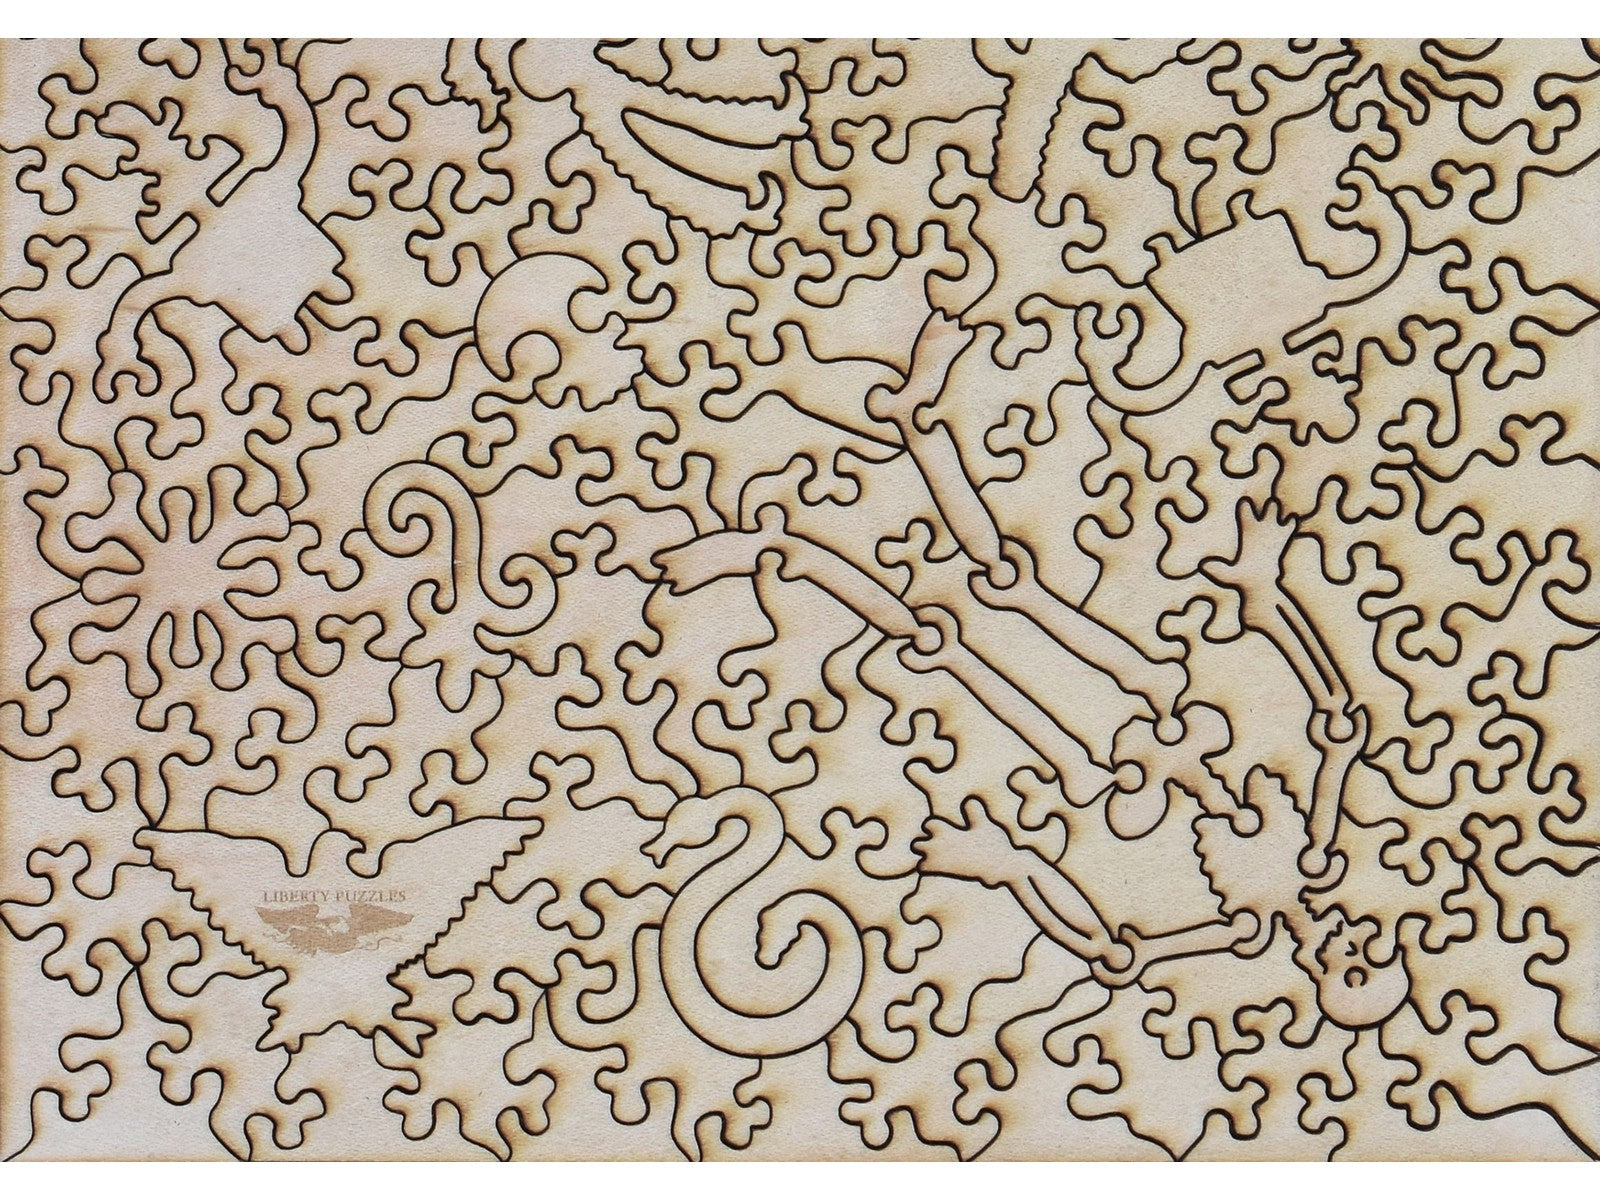 A closeup of the back of the puzzle, Dia De Los Muertos.